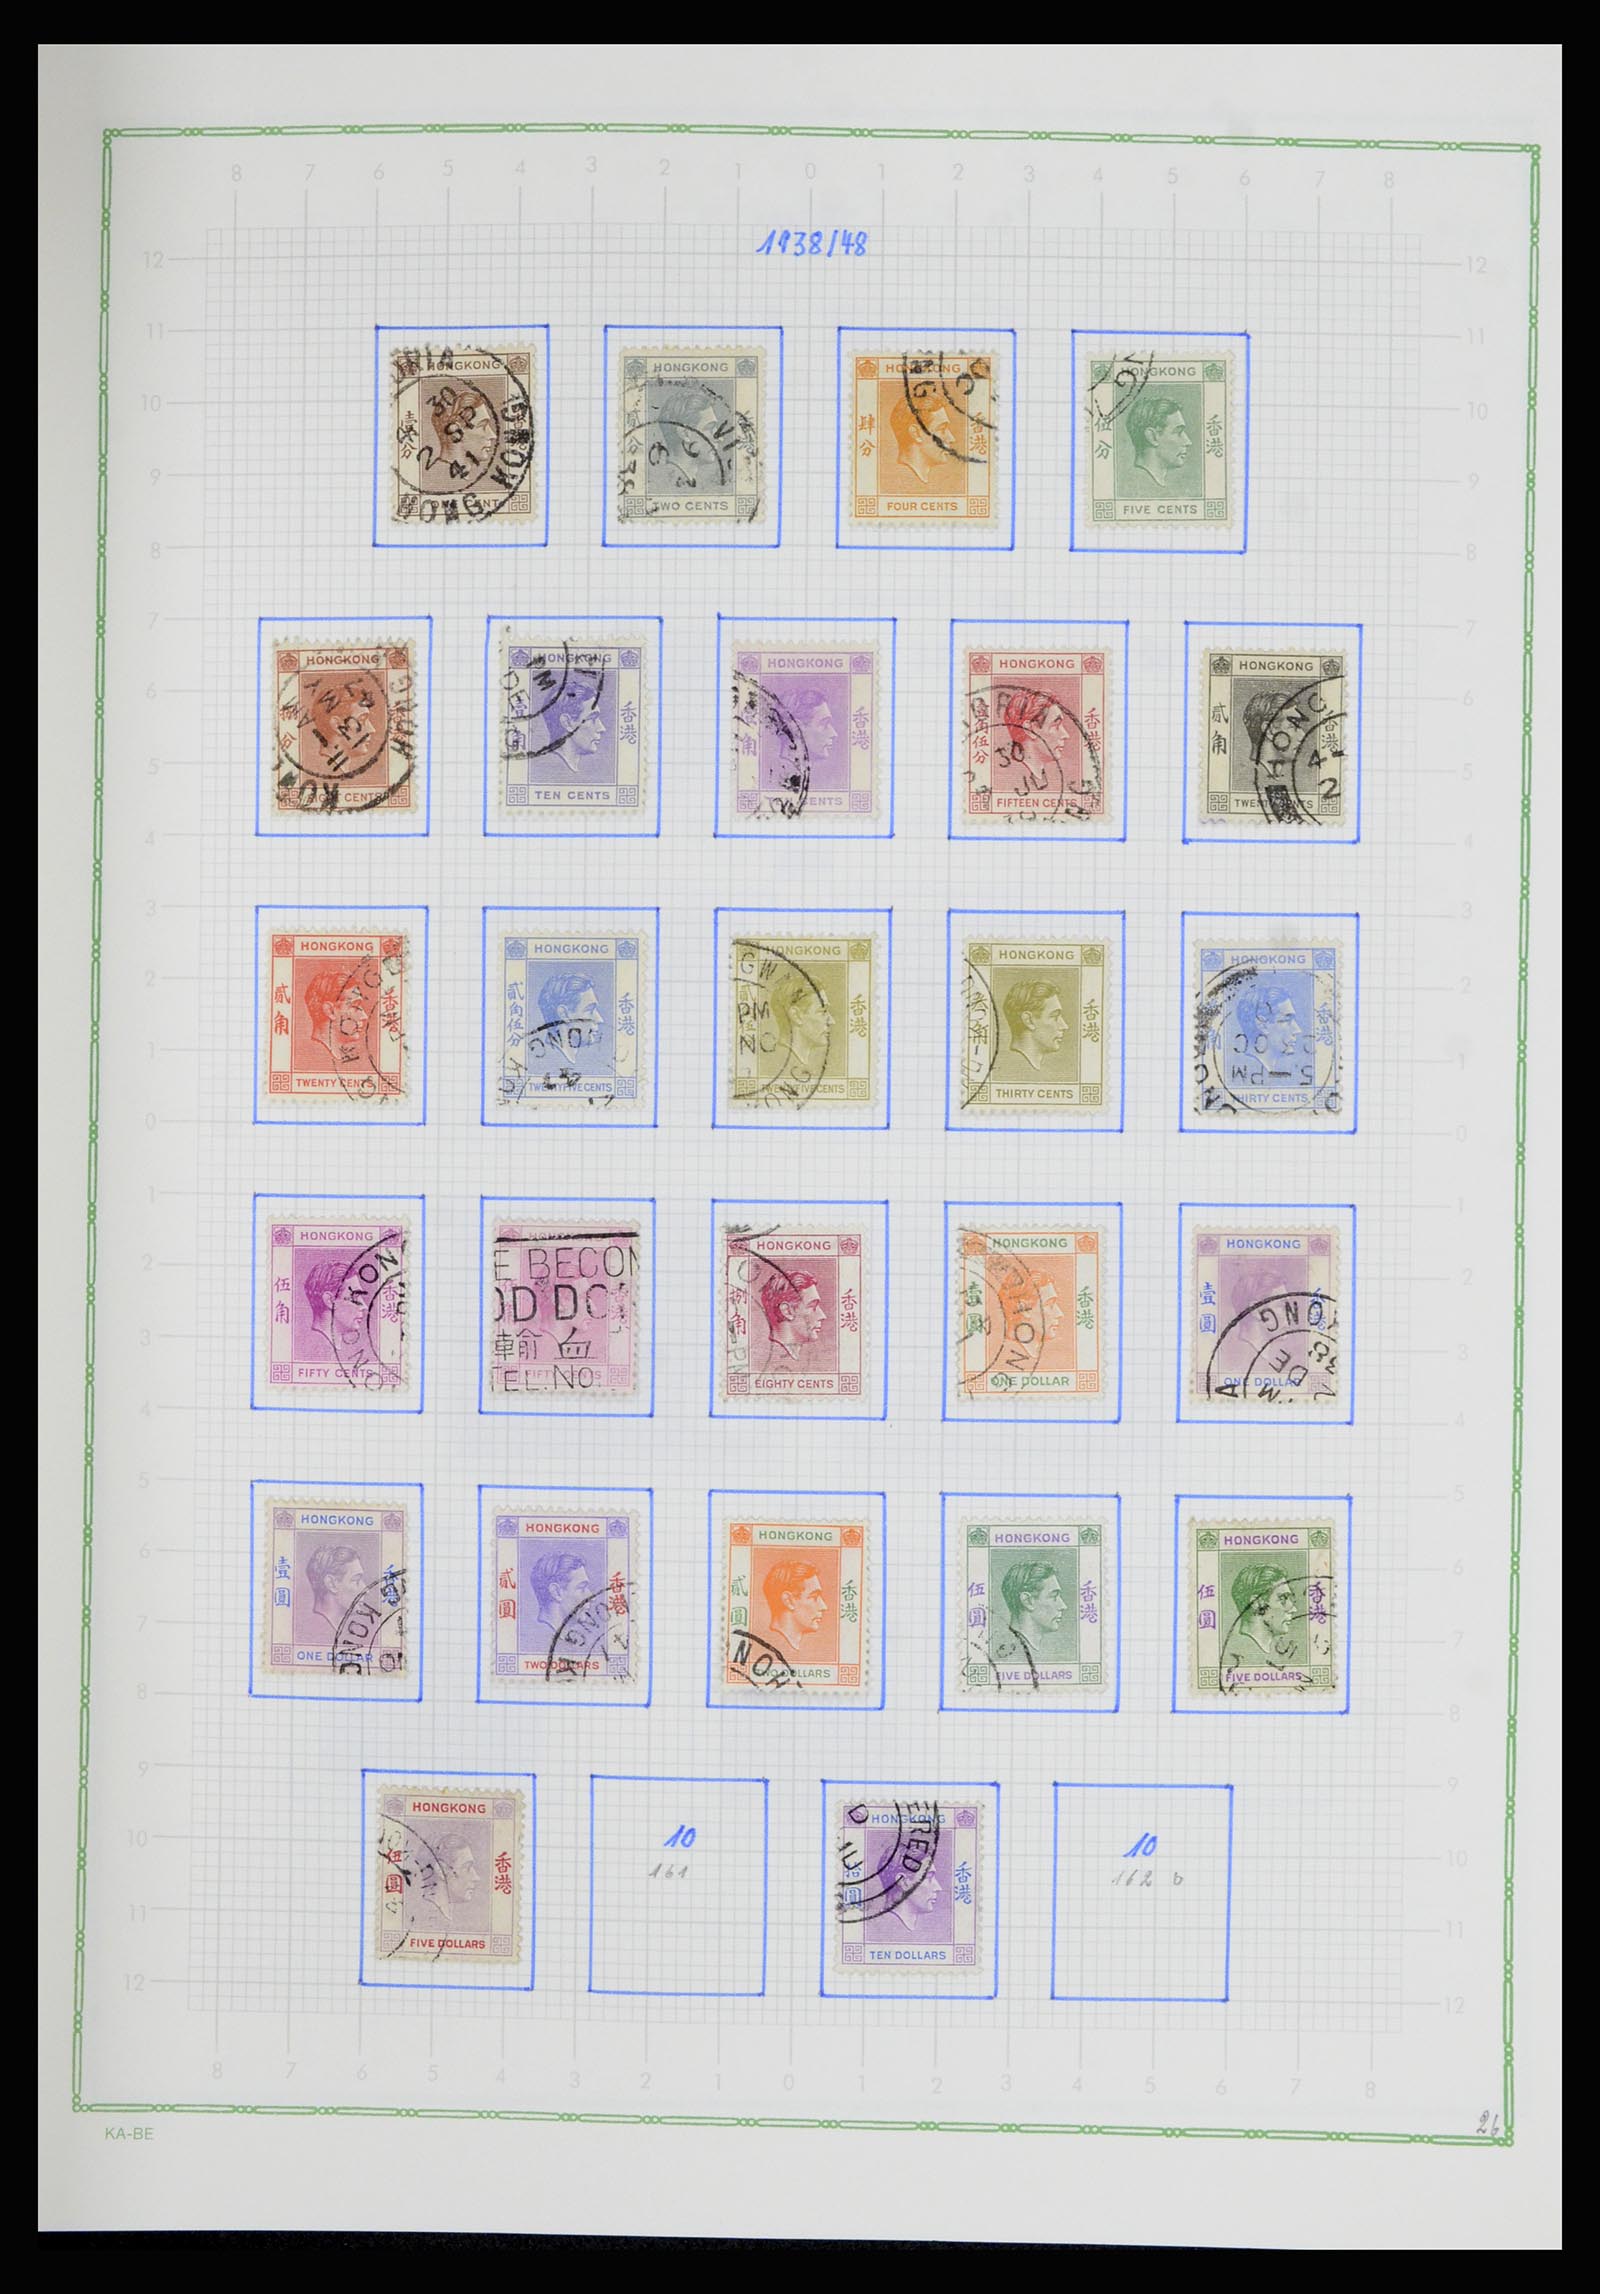 36942 008 - Stamp collection 36942 Hong Kong 1863-1997.